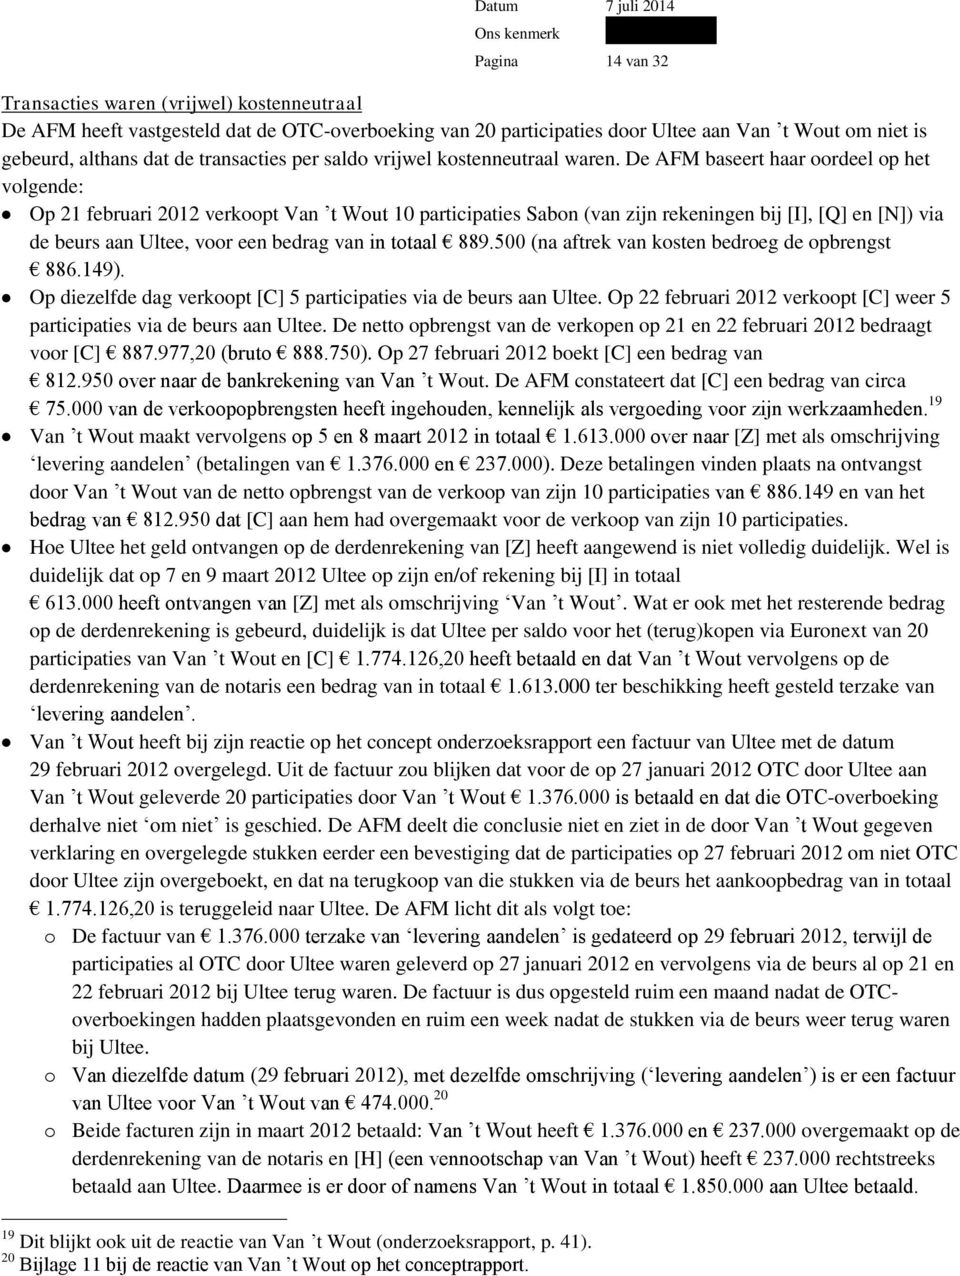 De AFM baseert haar oordeel op het volgende: Op 21 februari 2012 verkoopt Van t Wout 10 participaties Sabon (van zijn rekeningen bij [I], [Q] en [N]) via de beurs aan Ultee, voor een bedrag van in